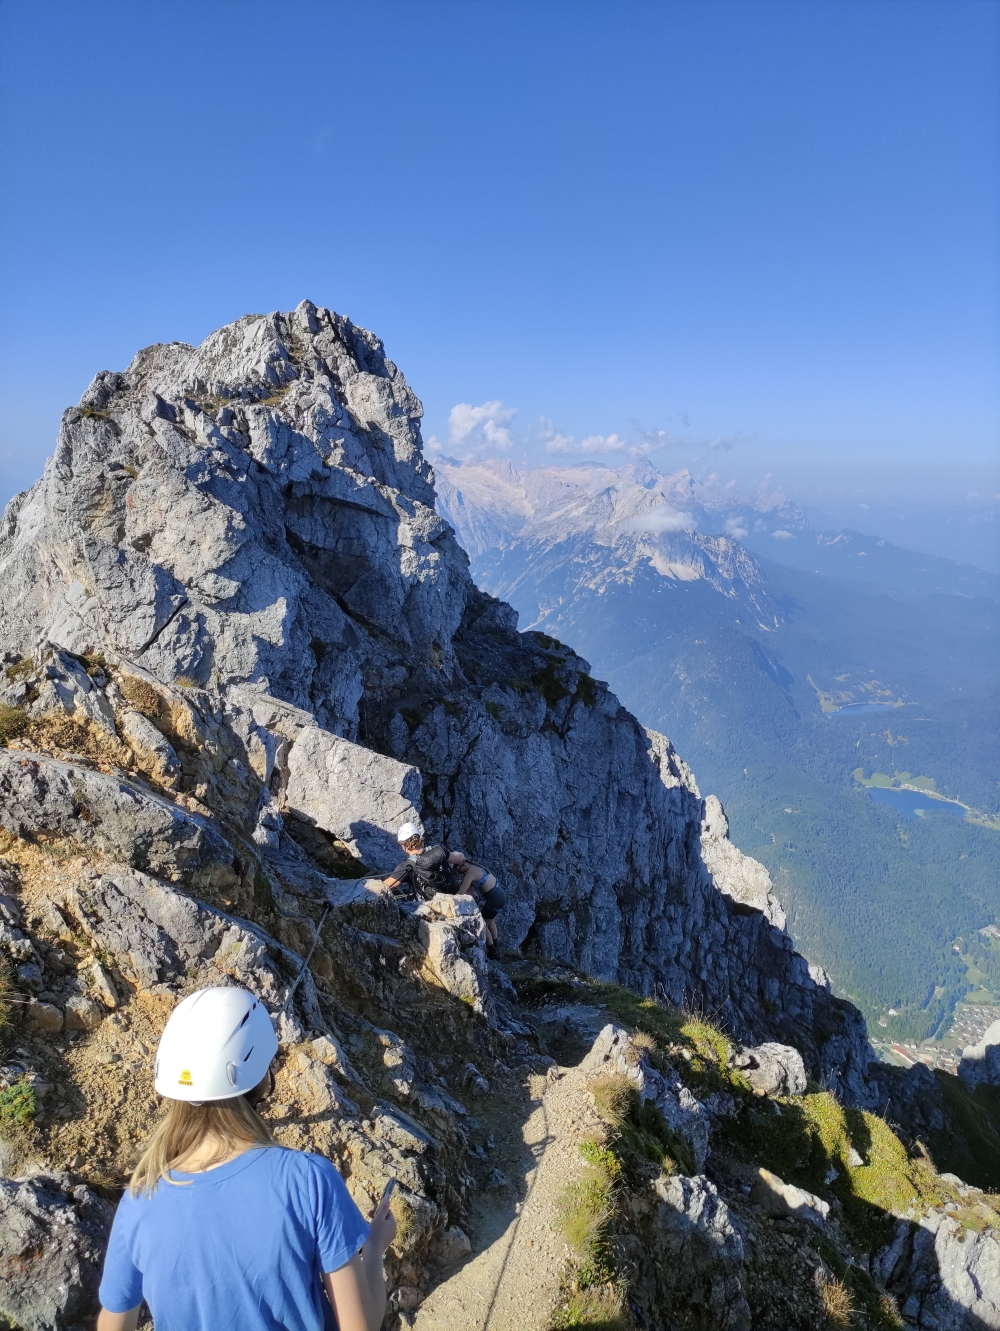 Nördliche Linderspitze: Start des Mittenwalder Höhenweges an der Nördliche Linderspitze